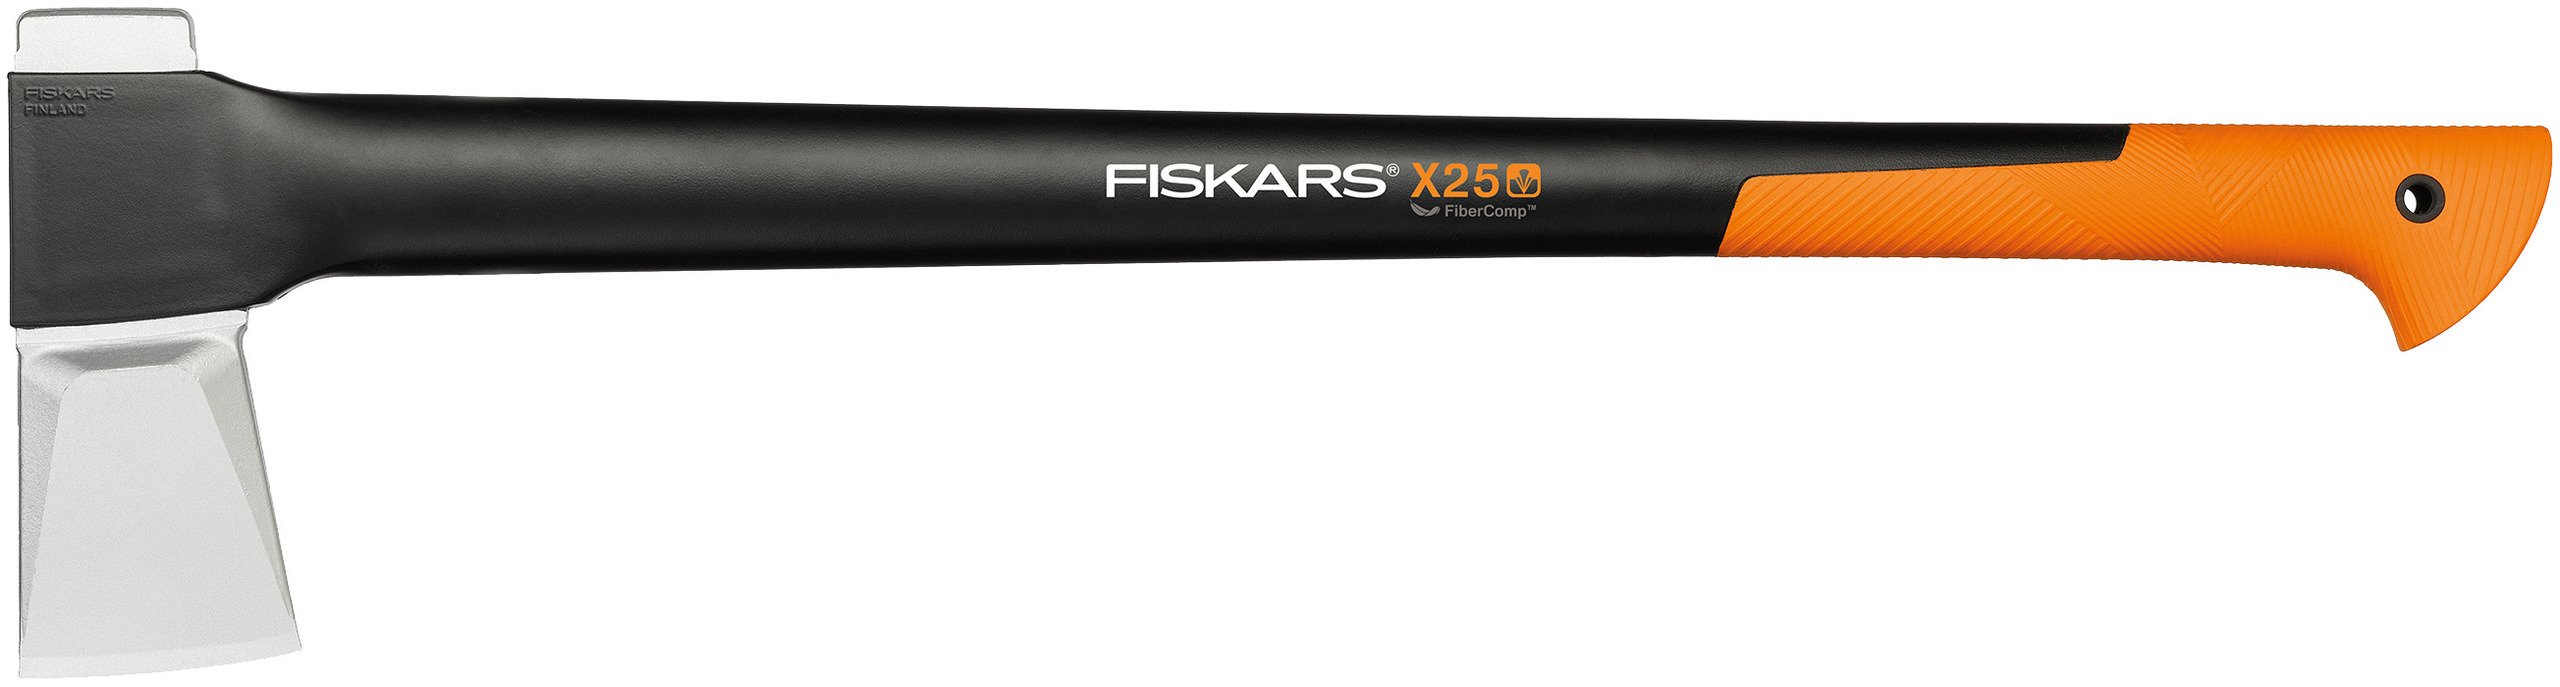 Fiskars Spaltaxt X25 - Größe XL